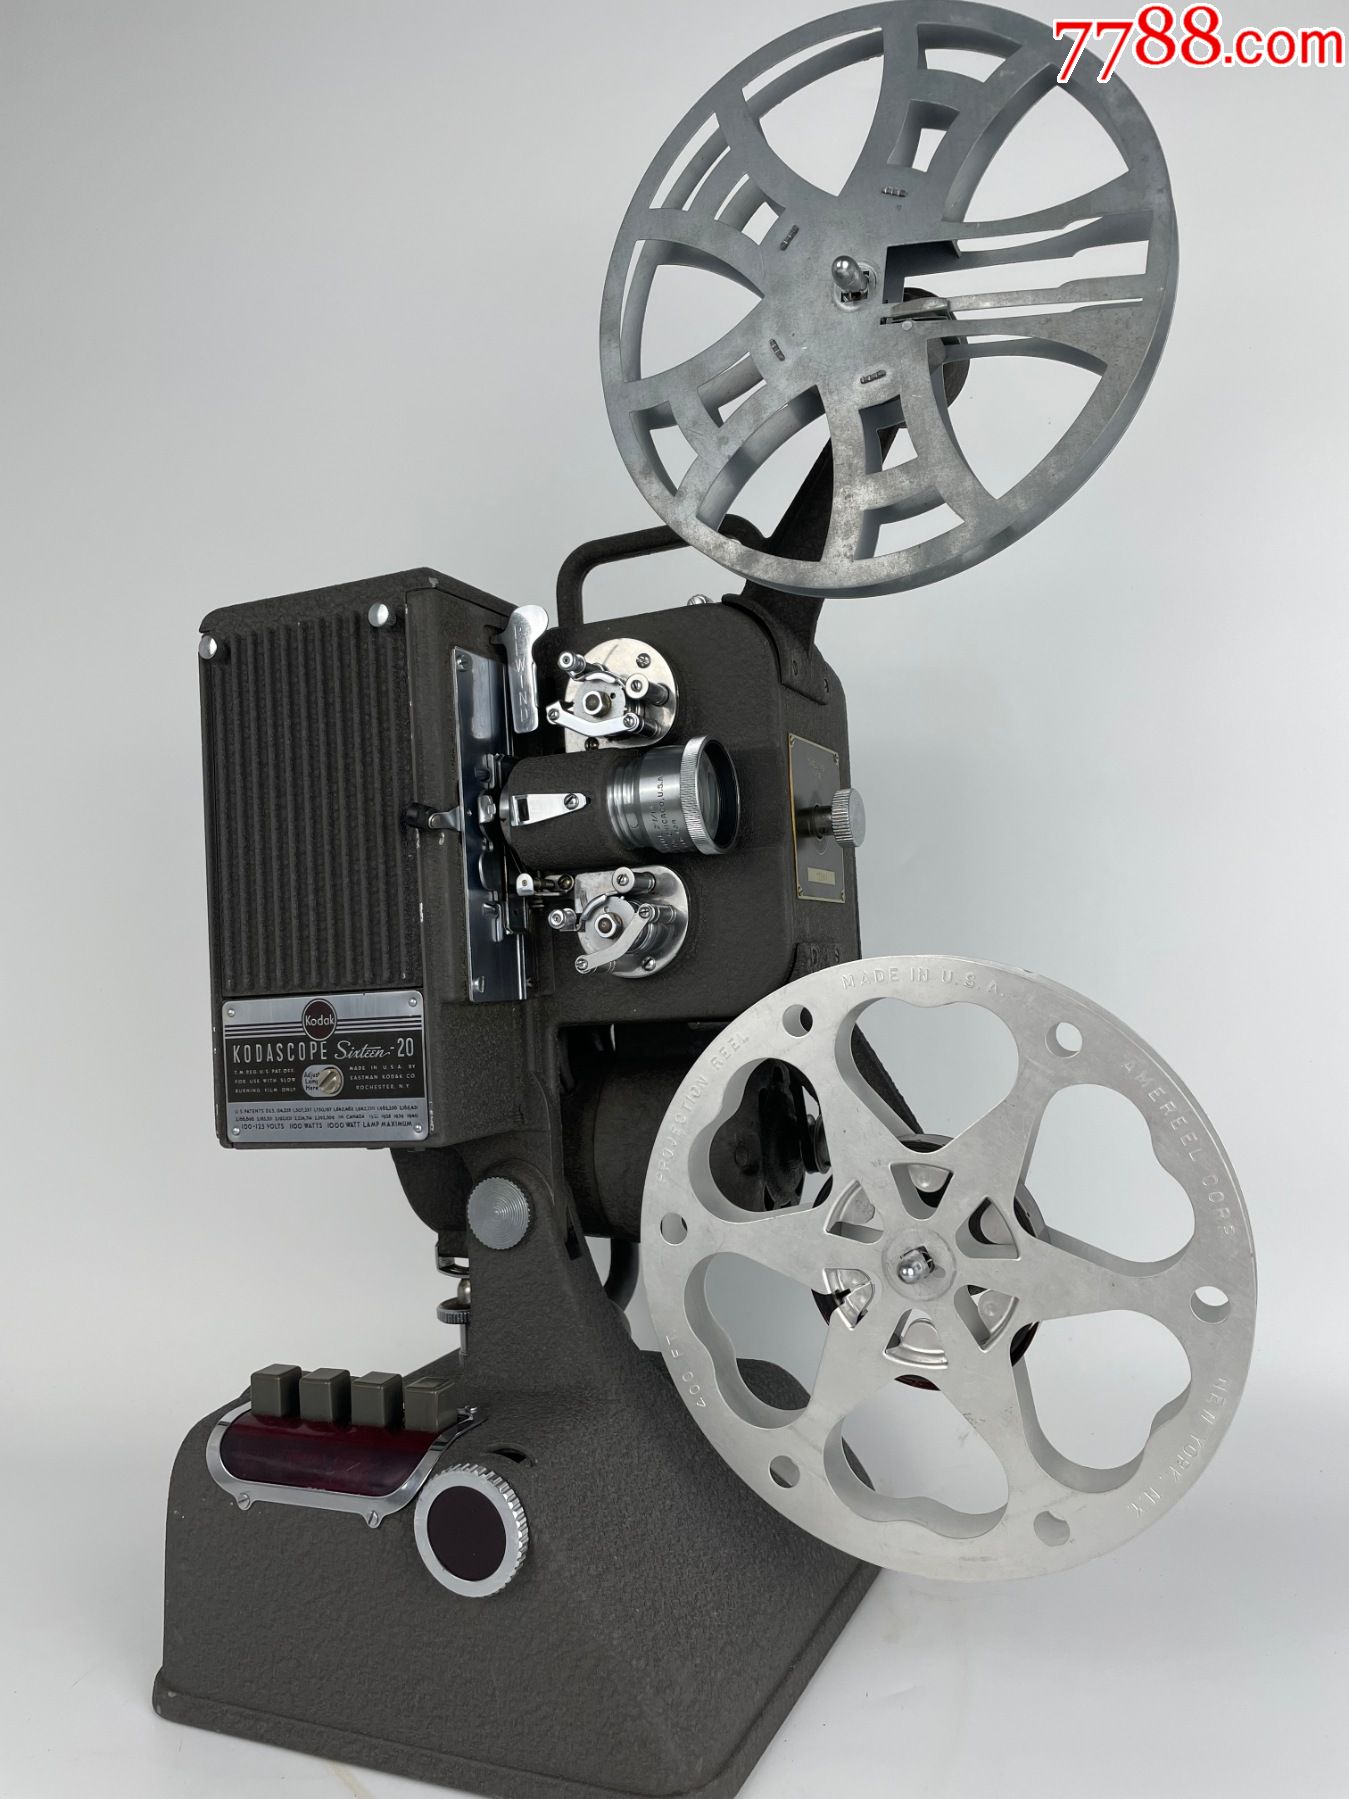 柯达20放映机kodak电影机16毫米mm放映机老式胶片电影机古董收藏